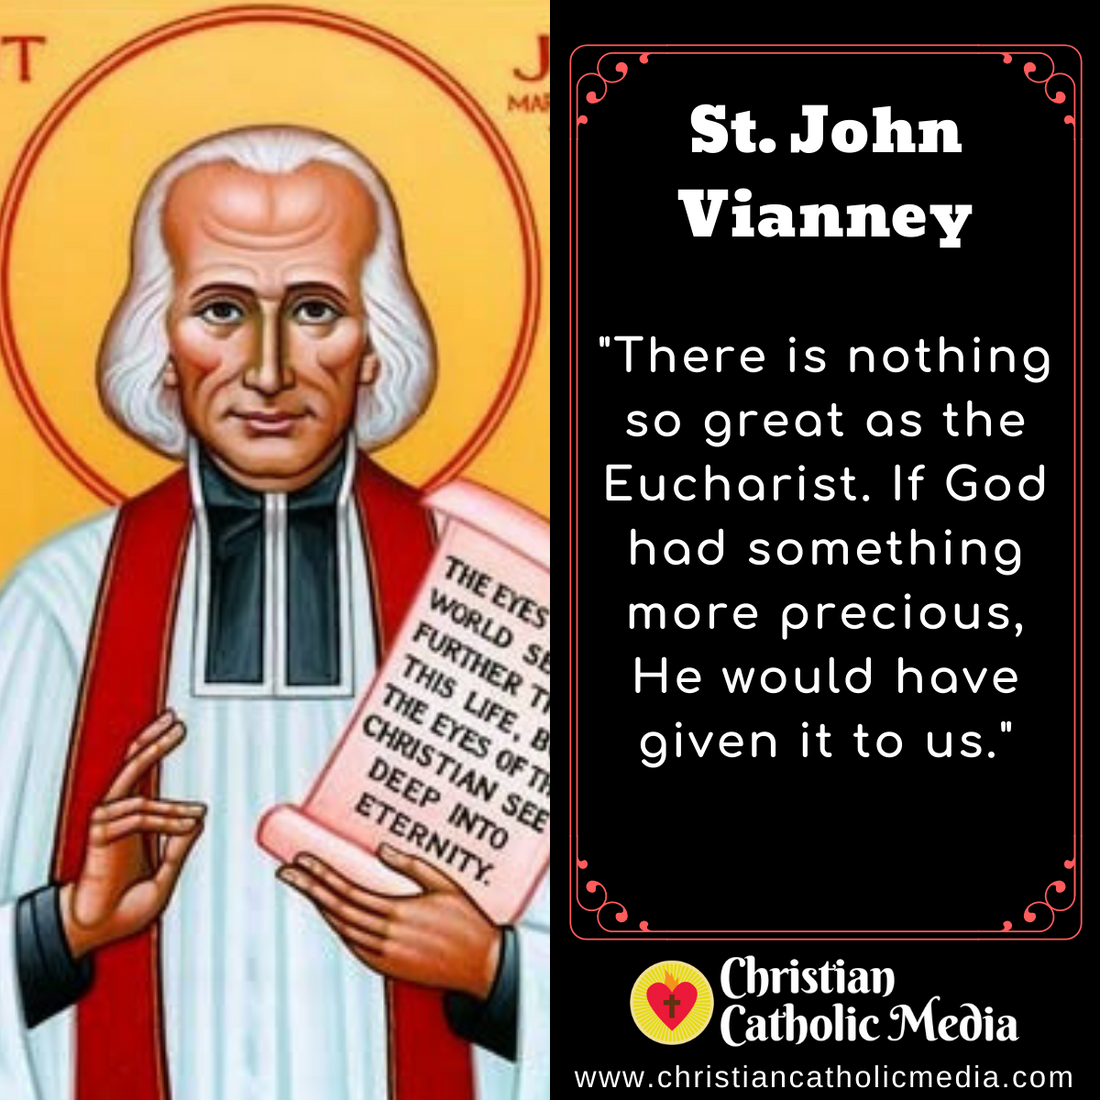 St. John Vianney - Tuesday August 4, 2020